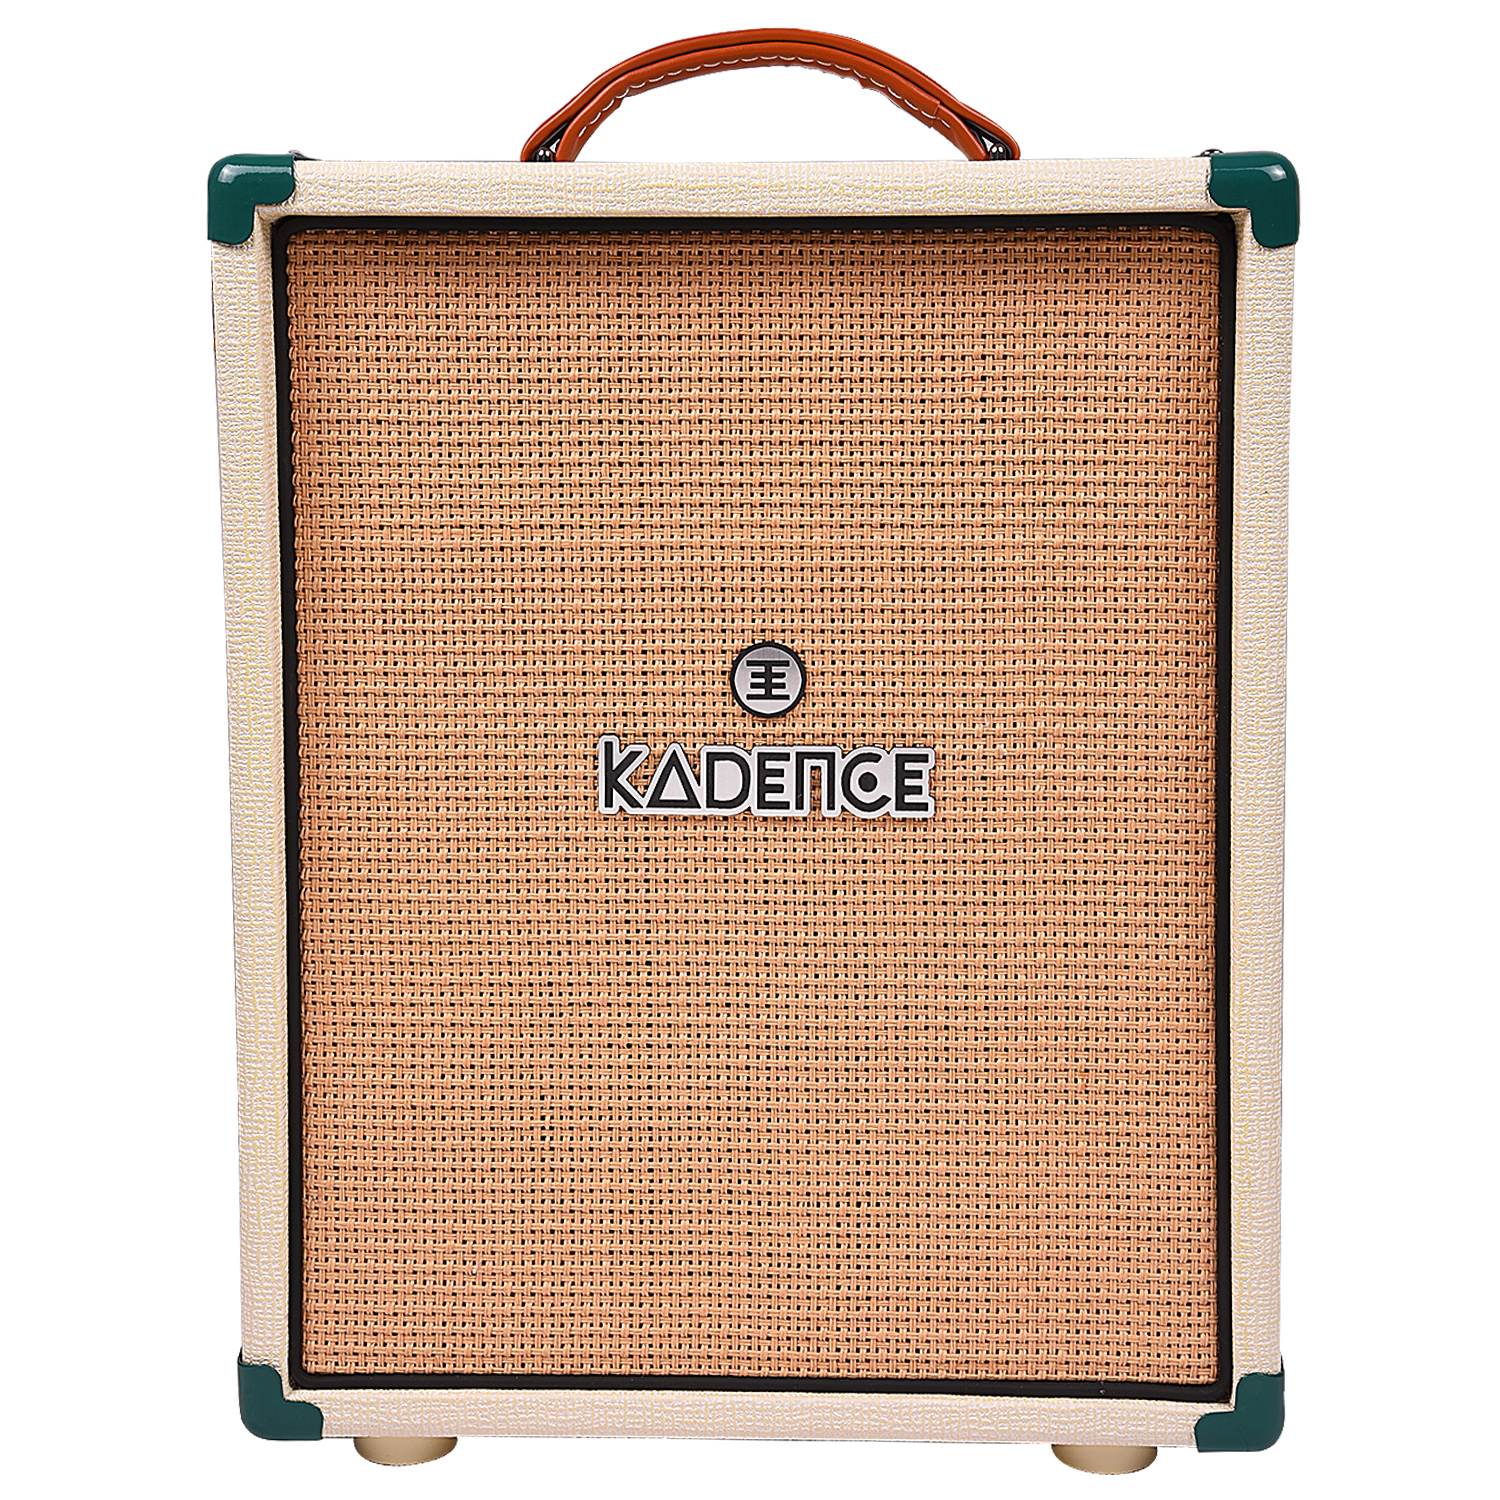 Kadence Amplifier BB20 2 input Bass